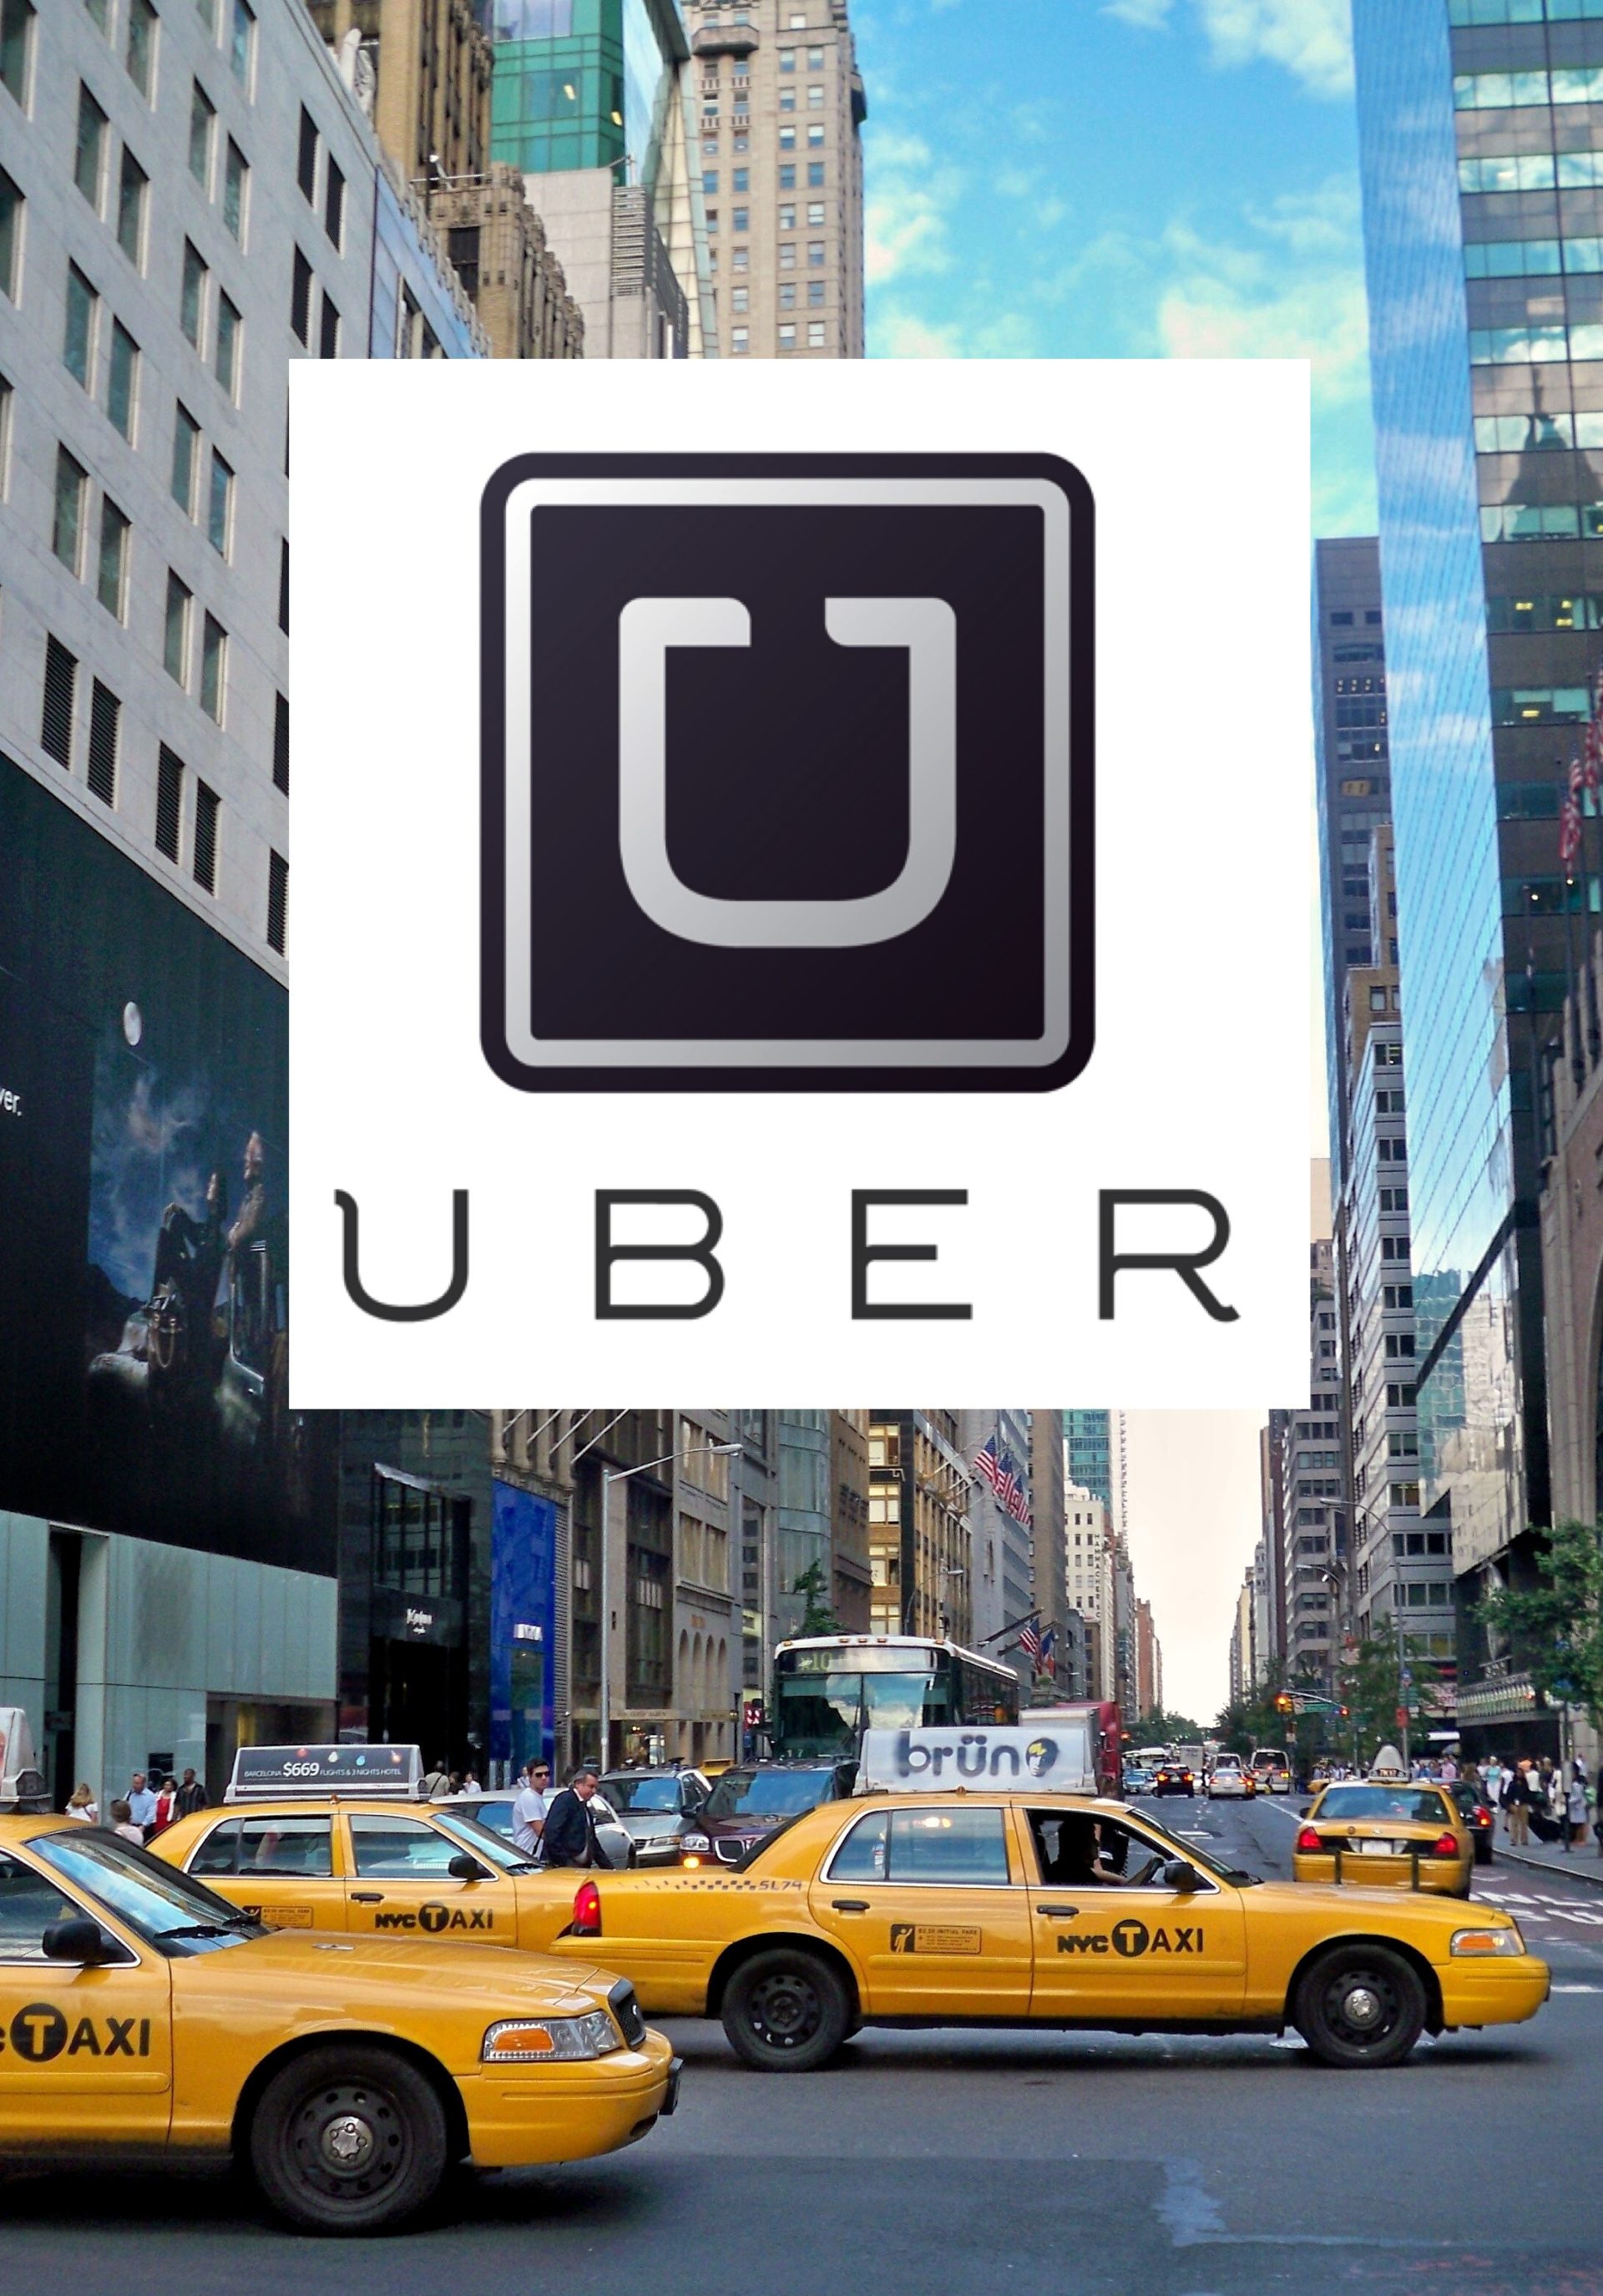 Uber ผู้สนับสนุน App Taxi มูลค่าพุ่งสูงถึง $17 พันล้าน!